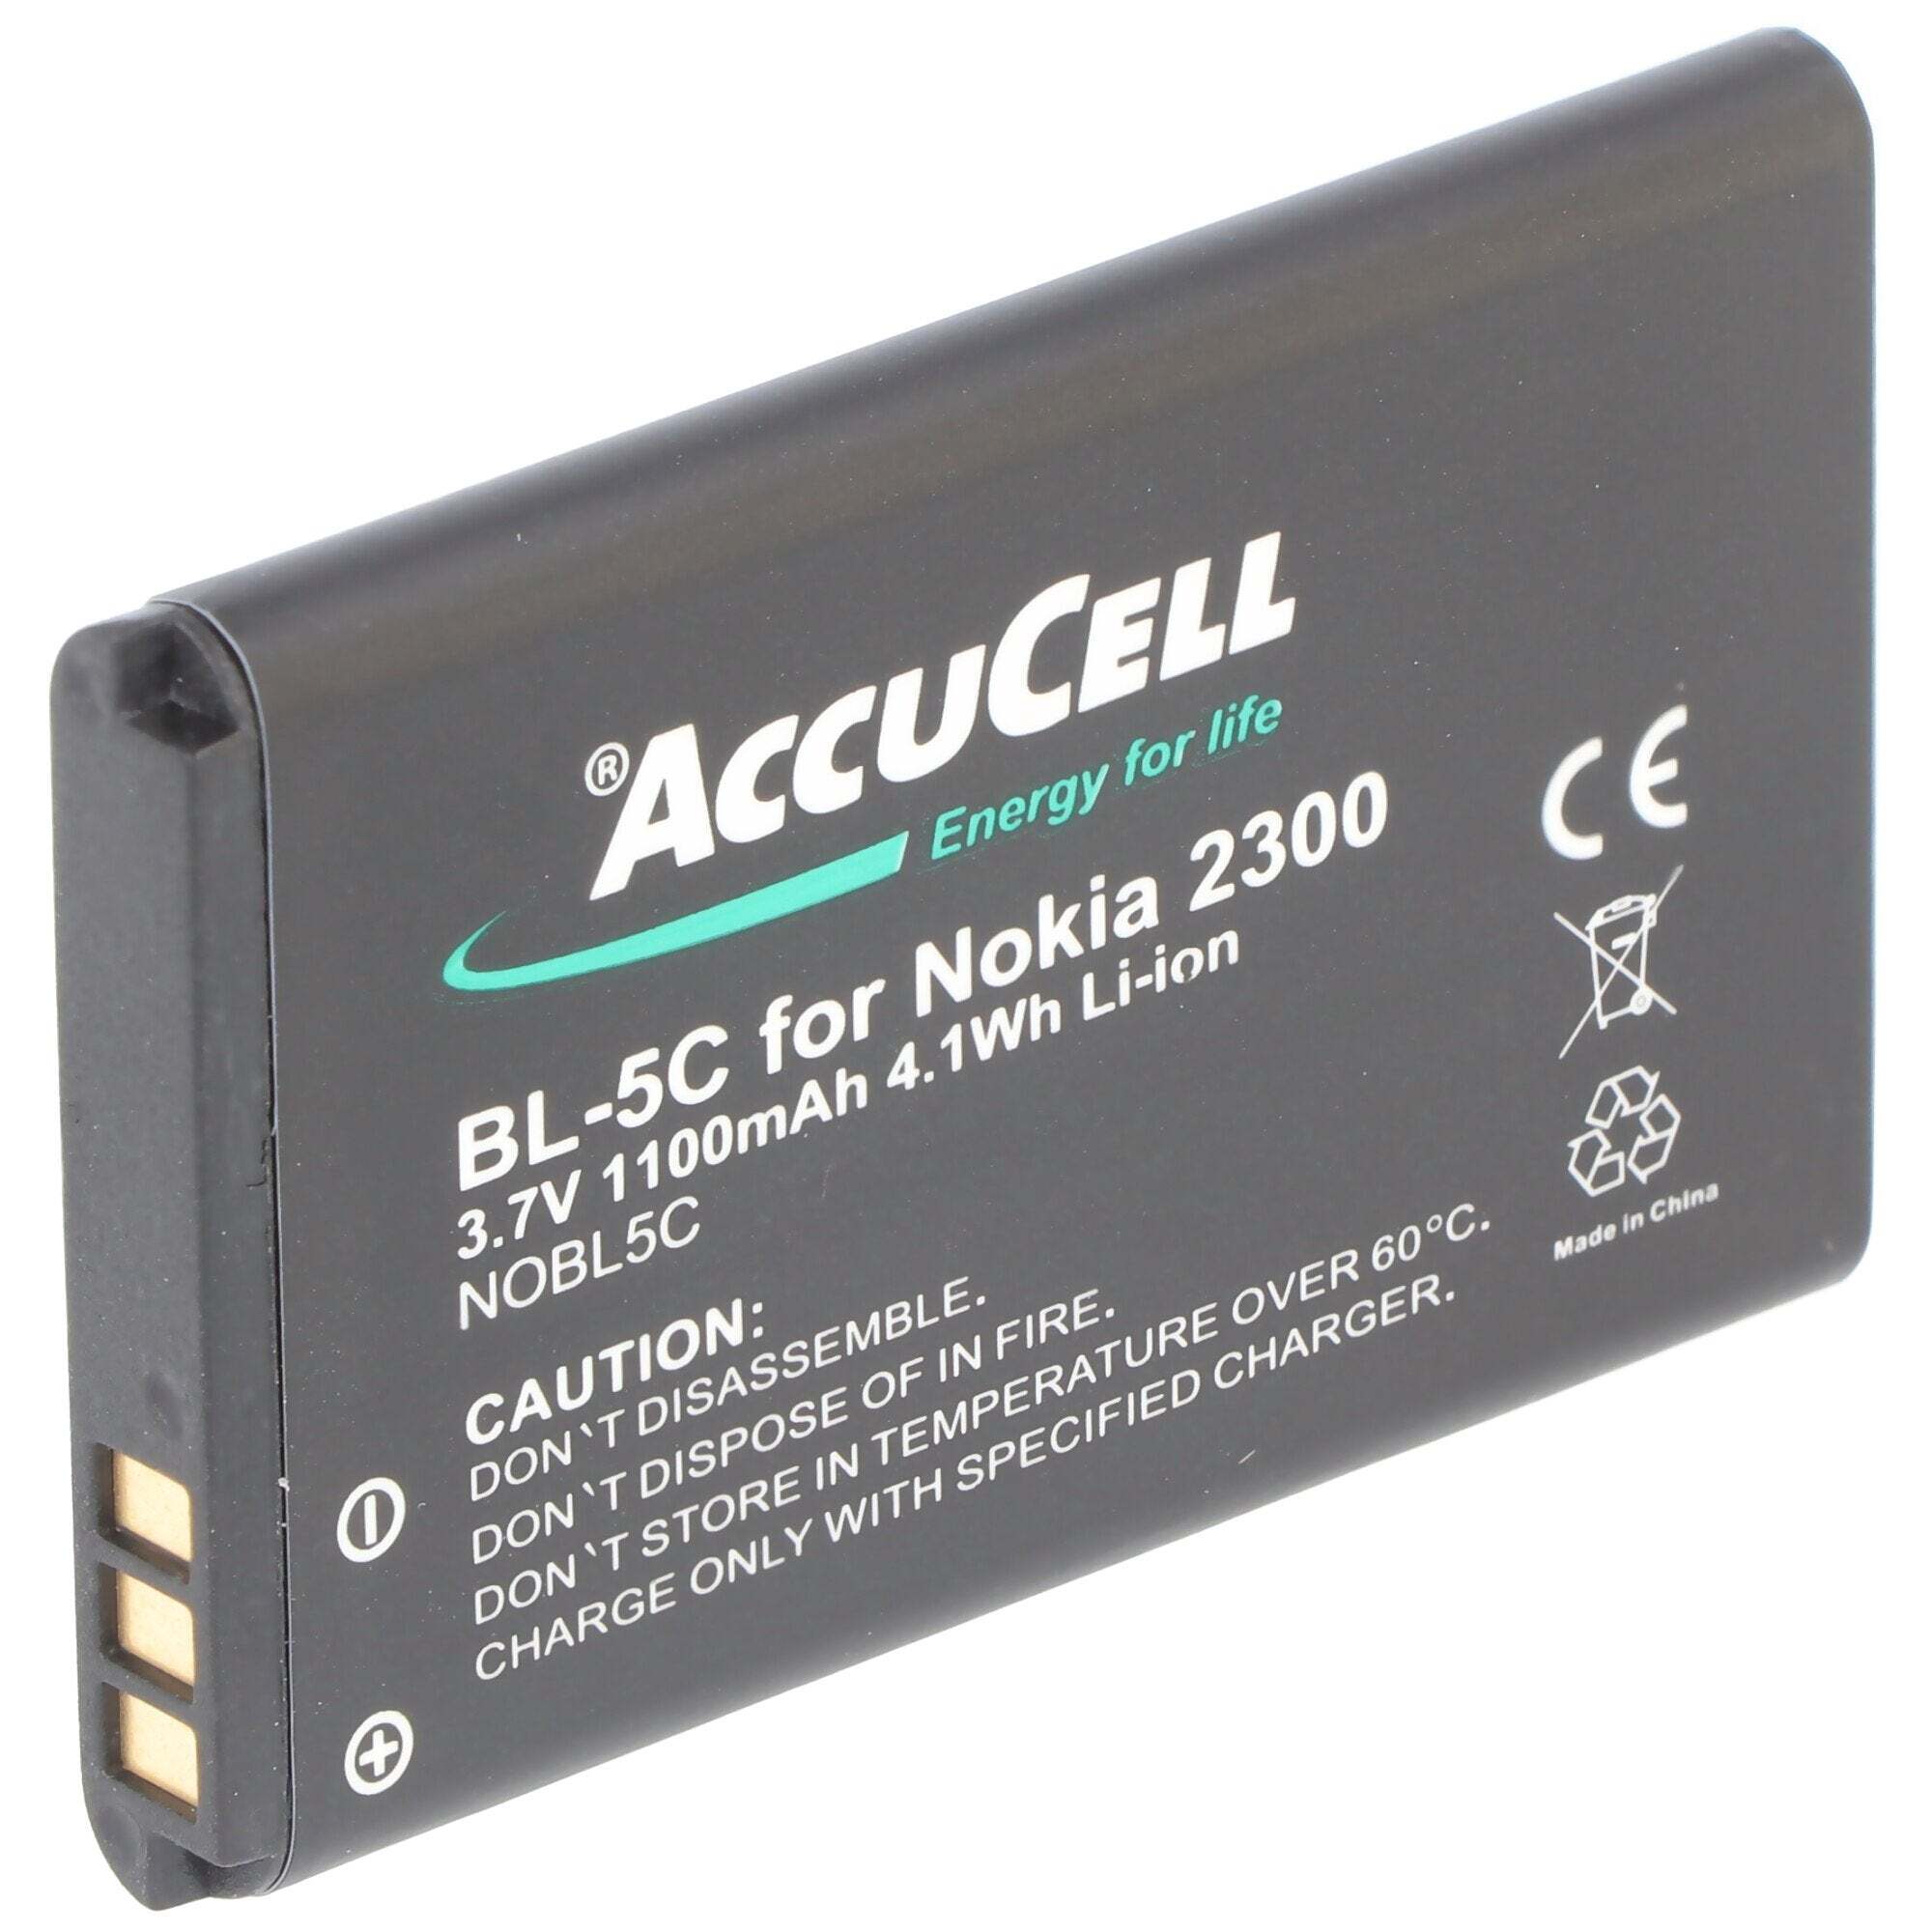 ACCUCELL AccuCell-batterij geschikt voor Nokia 1600, BL-5C, 750mAh